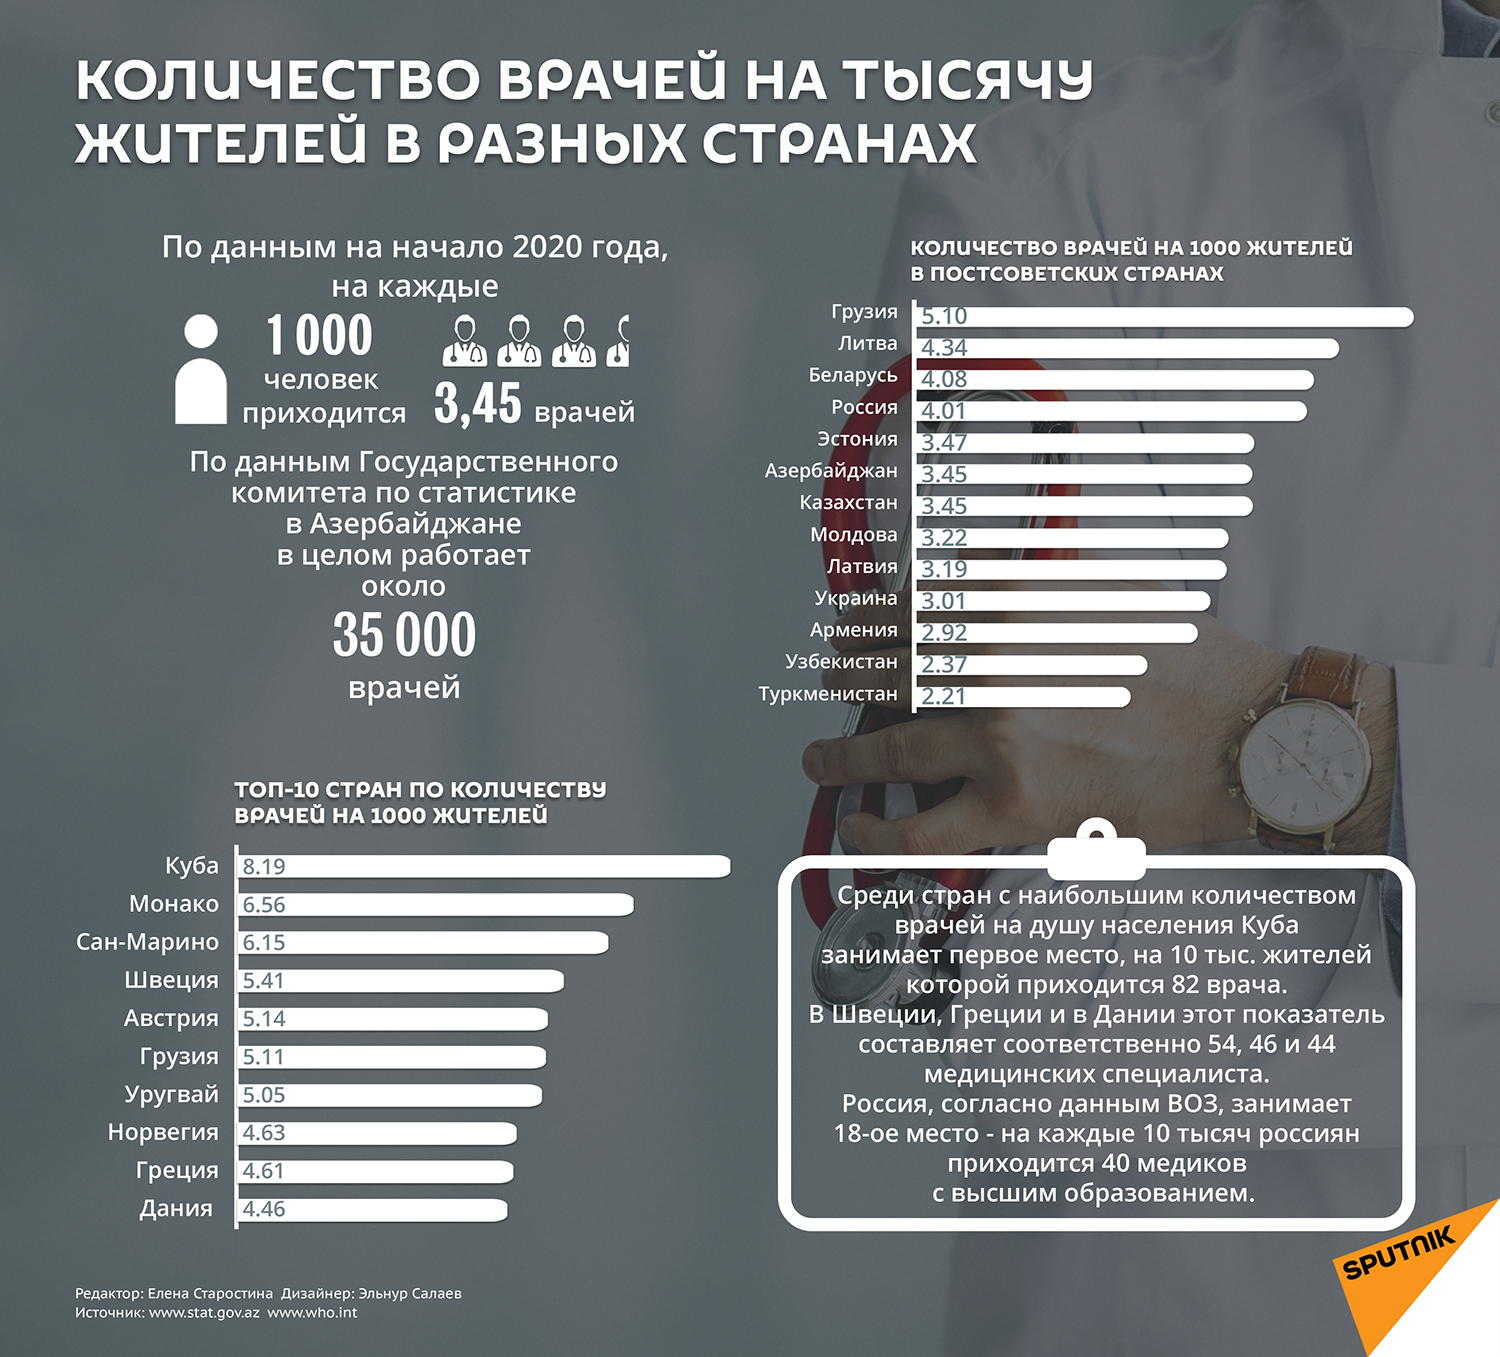 Инфографика: Количество врачей в разных странах - Sputnik Азербайджан